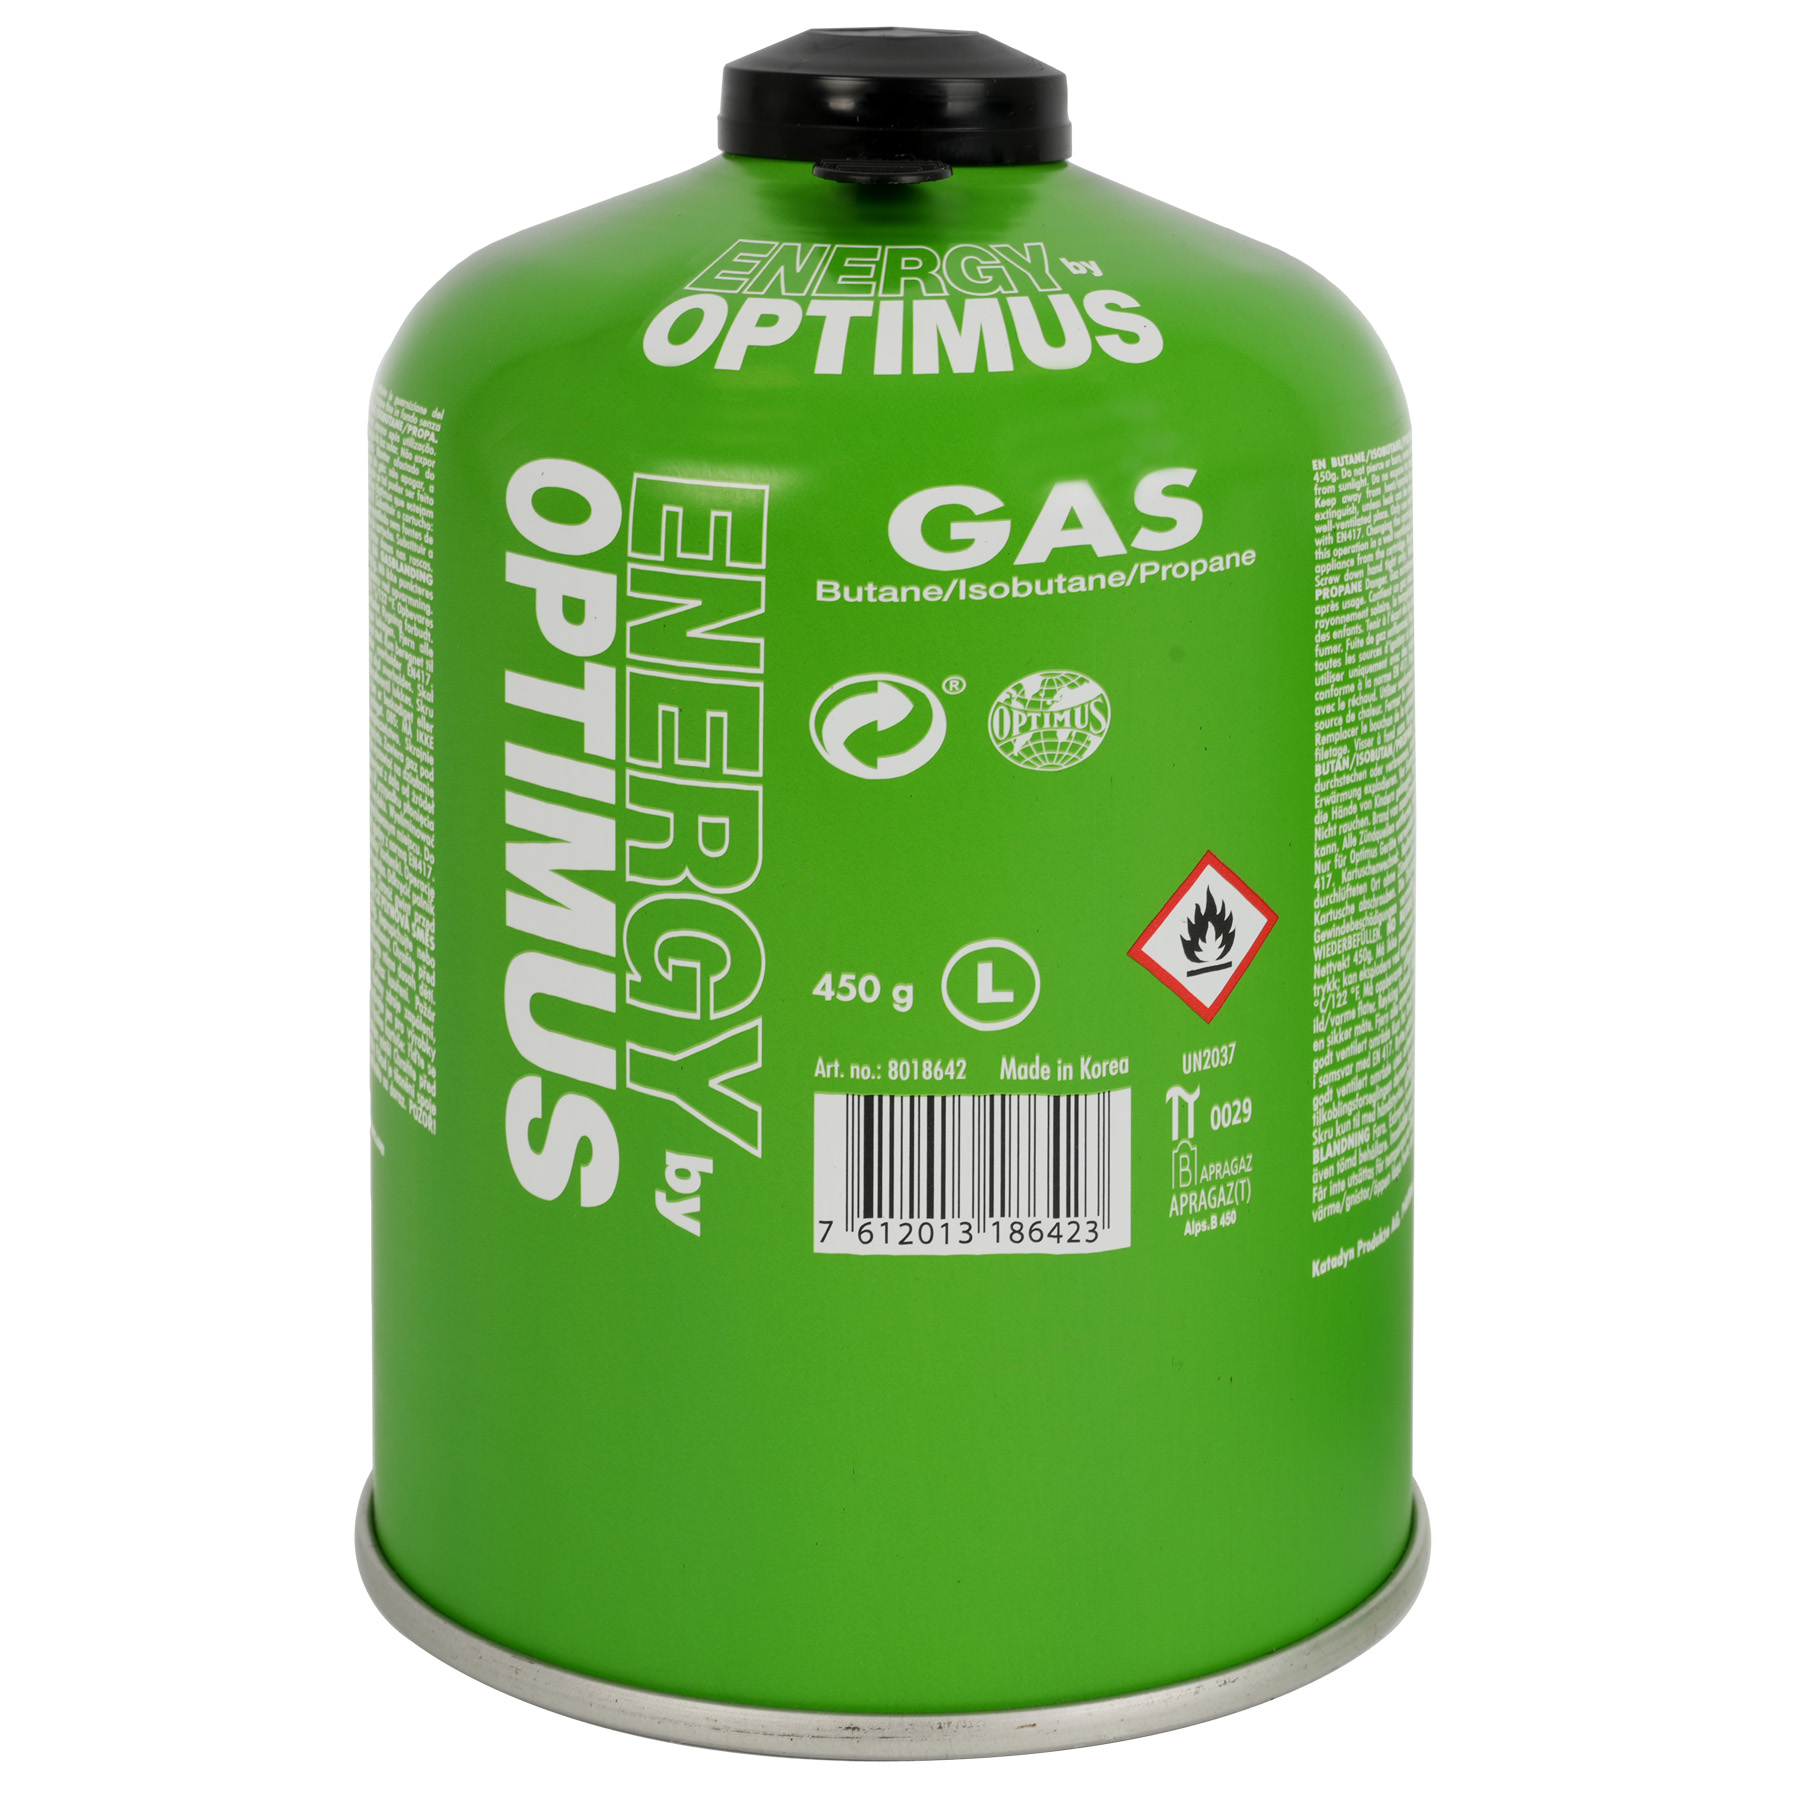 Produktbild von Optimus Universal Gaskartusche - 450g